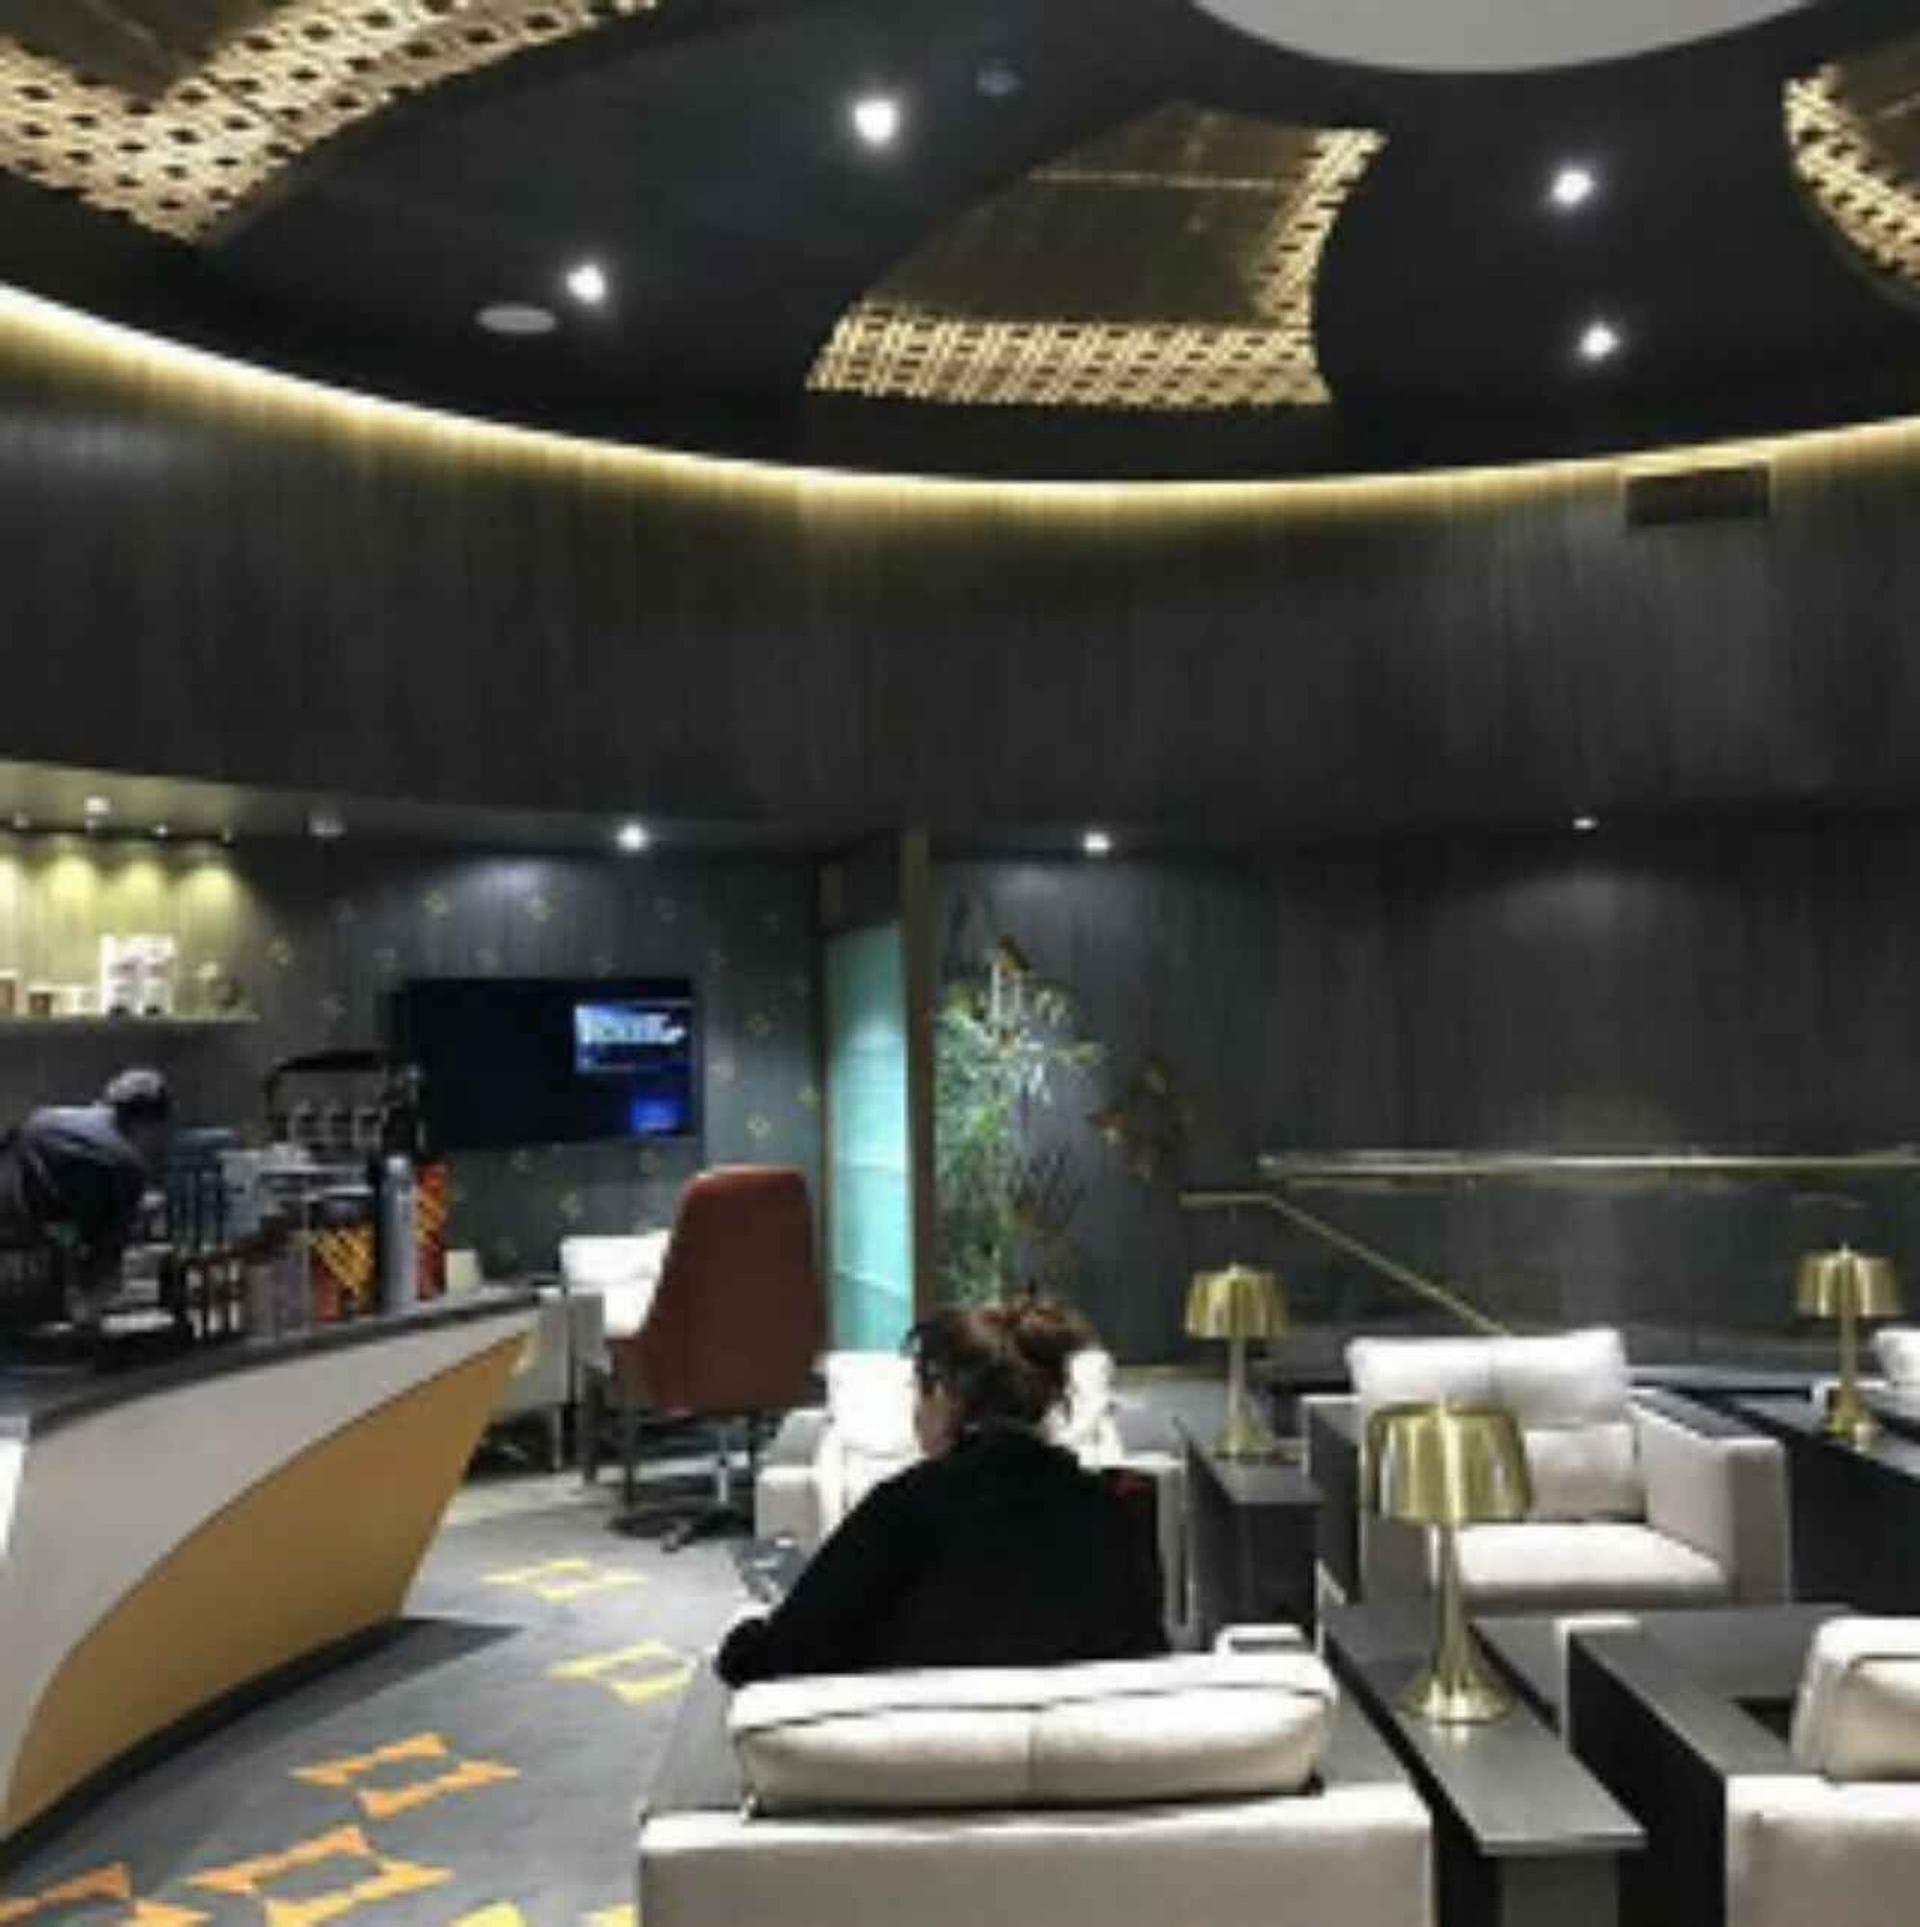 Bank Alfalah Premier Lounge (Domestic) image 3 of 5